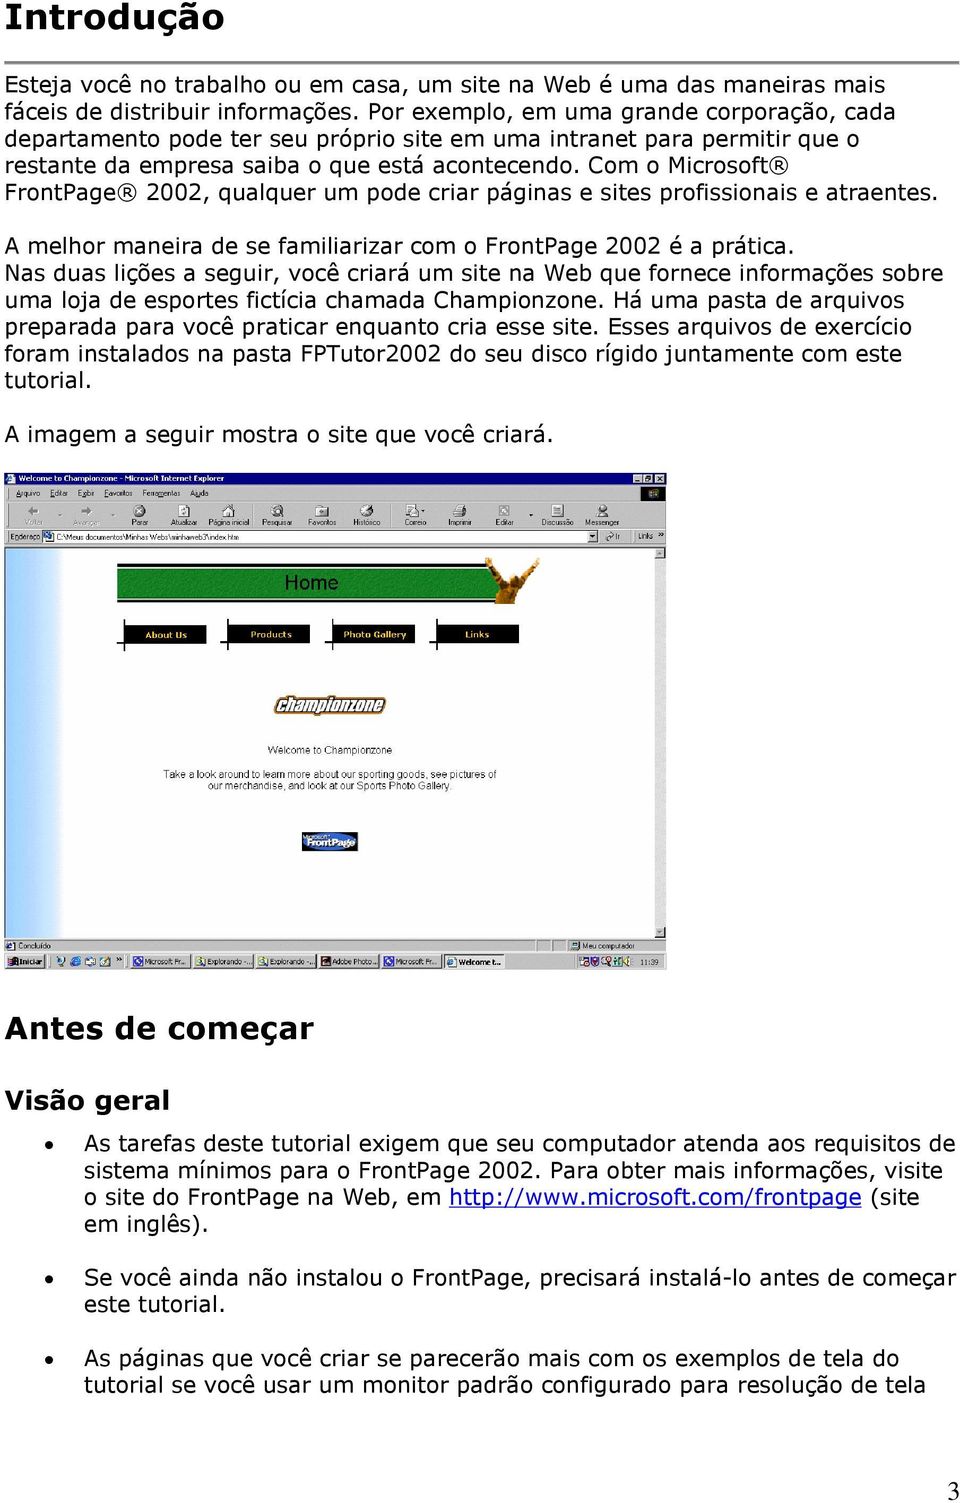 Com o Microsoft FrontPage 2002, qualquer um pode criar páginas e sites profissionais e atraentes. A melhor maneira de se familiarizar com o FrontPage 2002 é a prática.